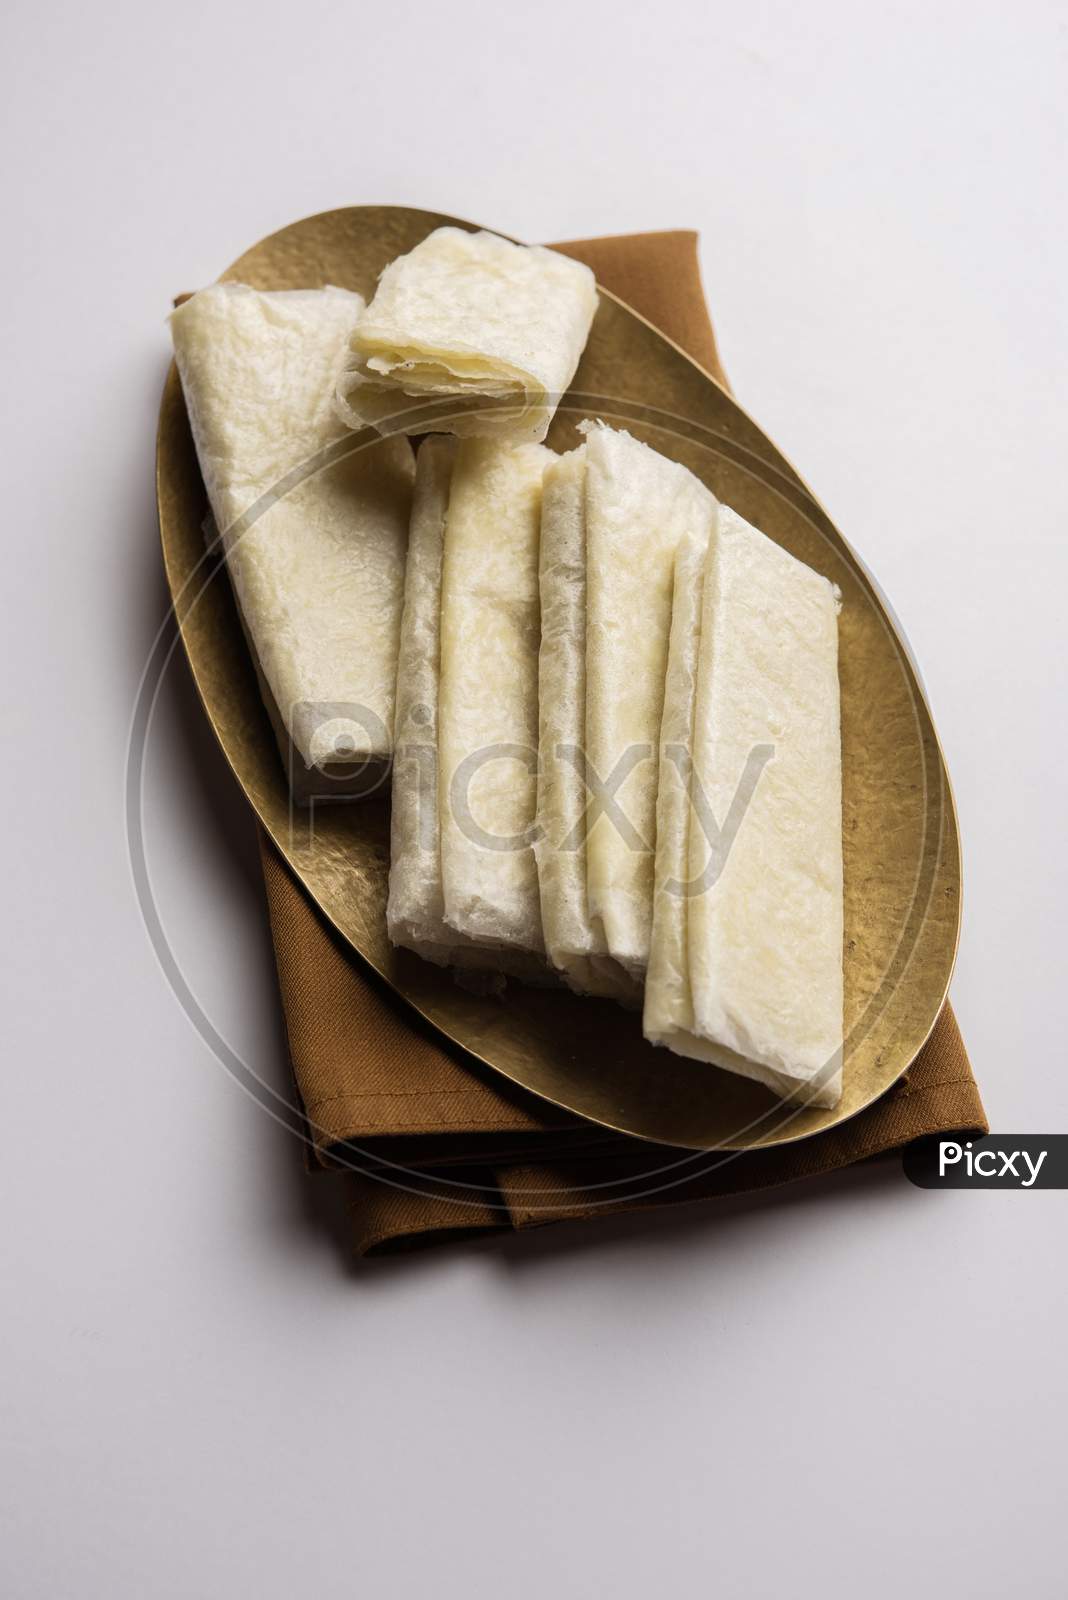 Pootharekulu or paper-thin sweet